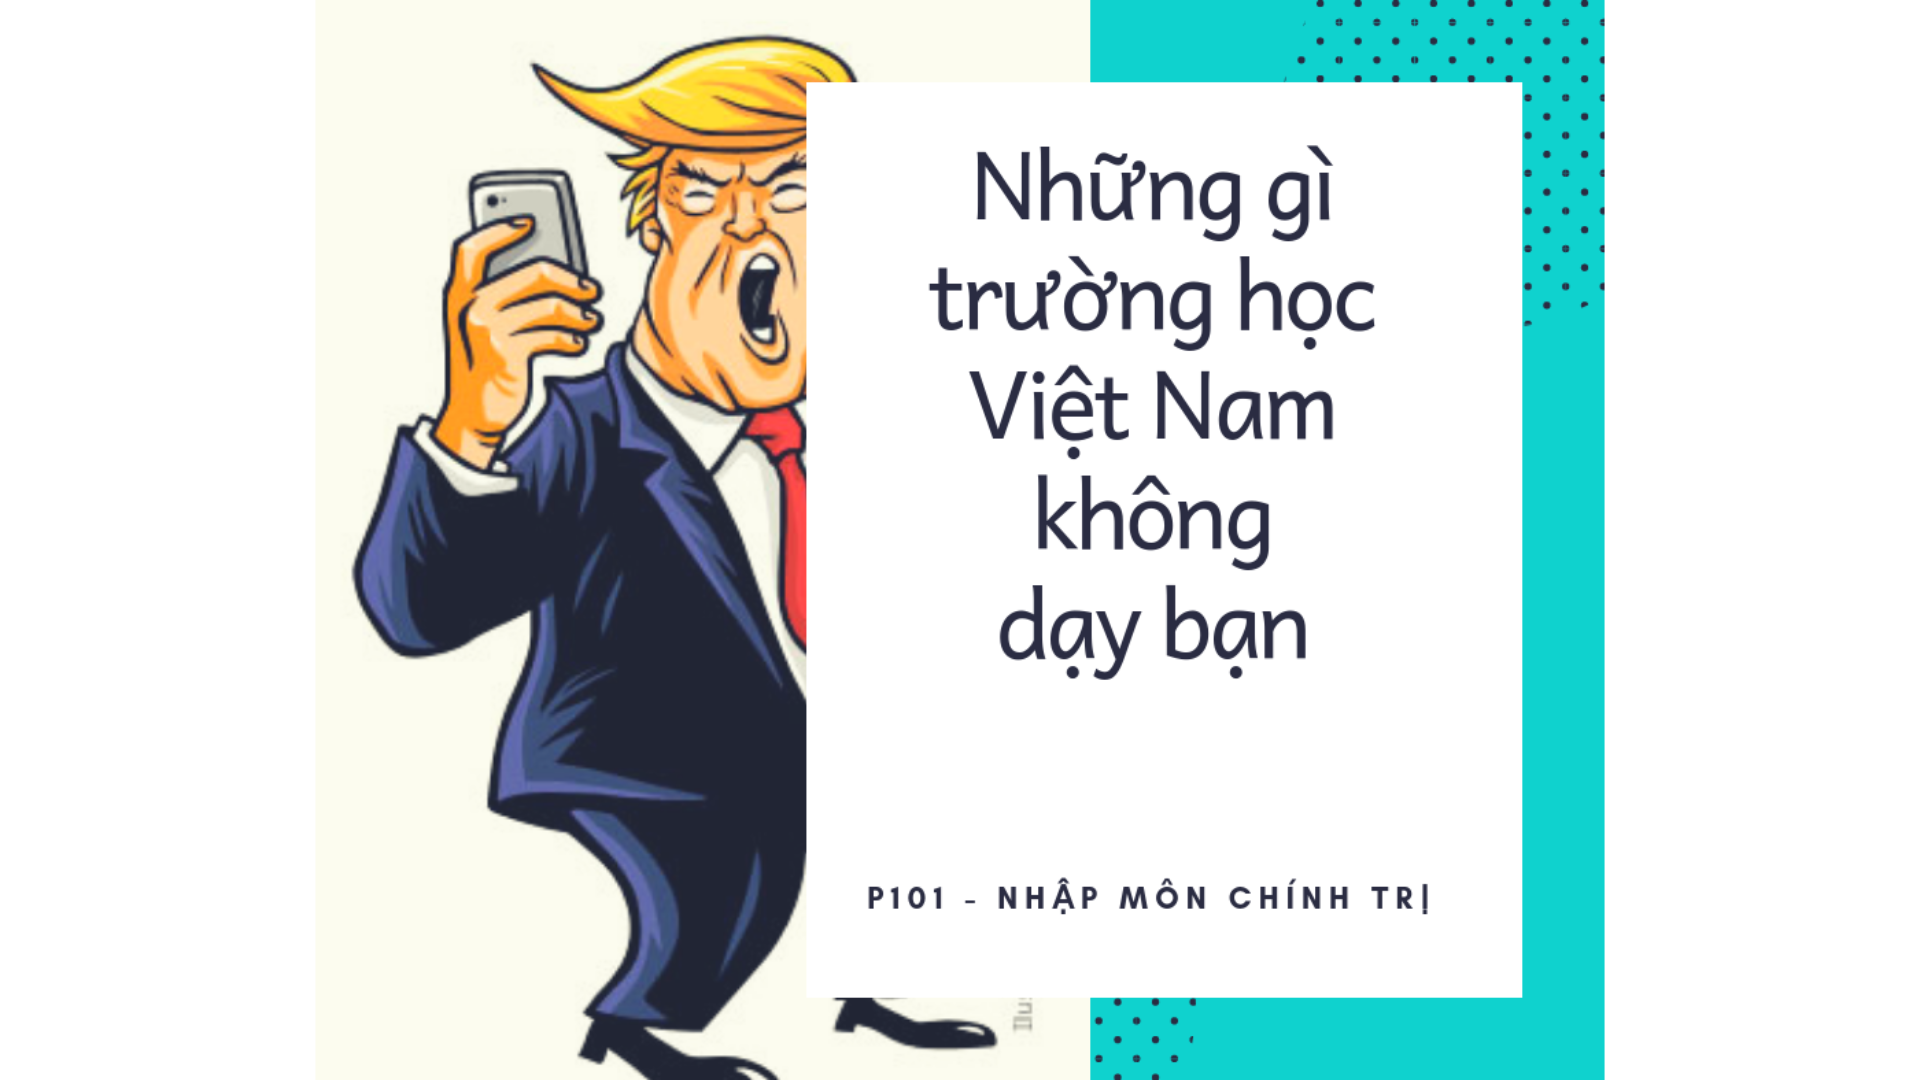 (Tiếng Việt) Những điều trường học Việt Nam không dạy bạn (Kỳ 1): Nhập môn Chính trị